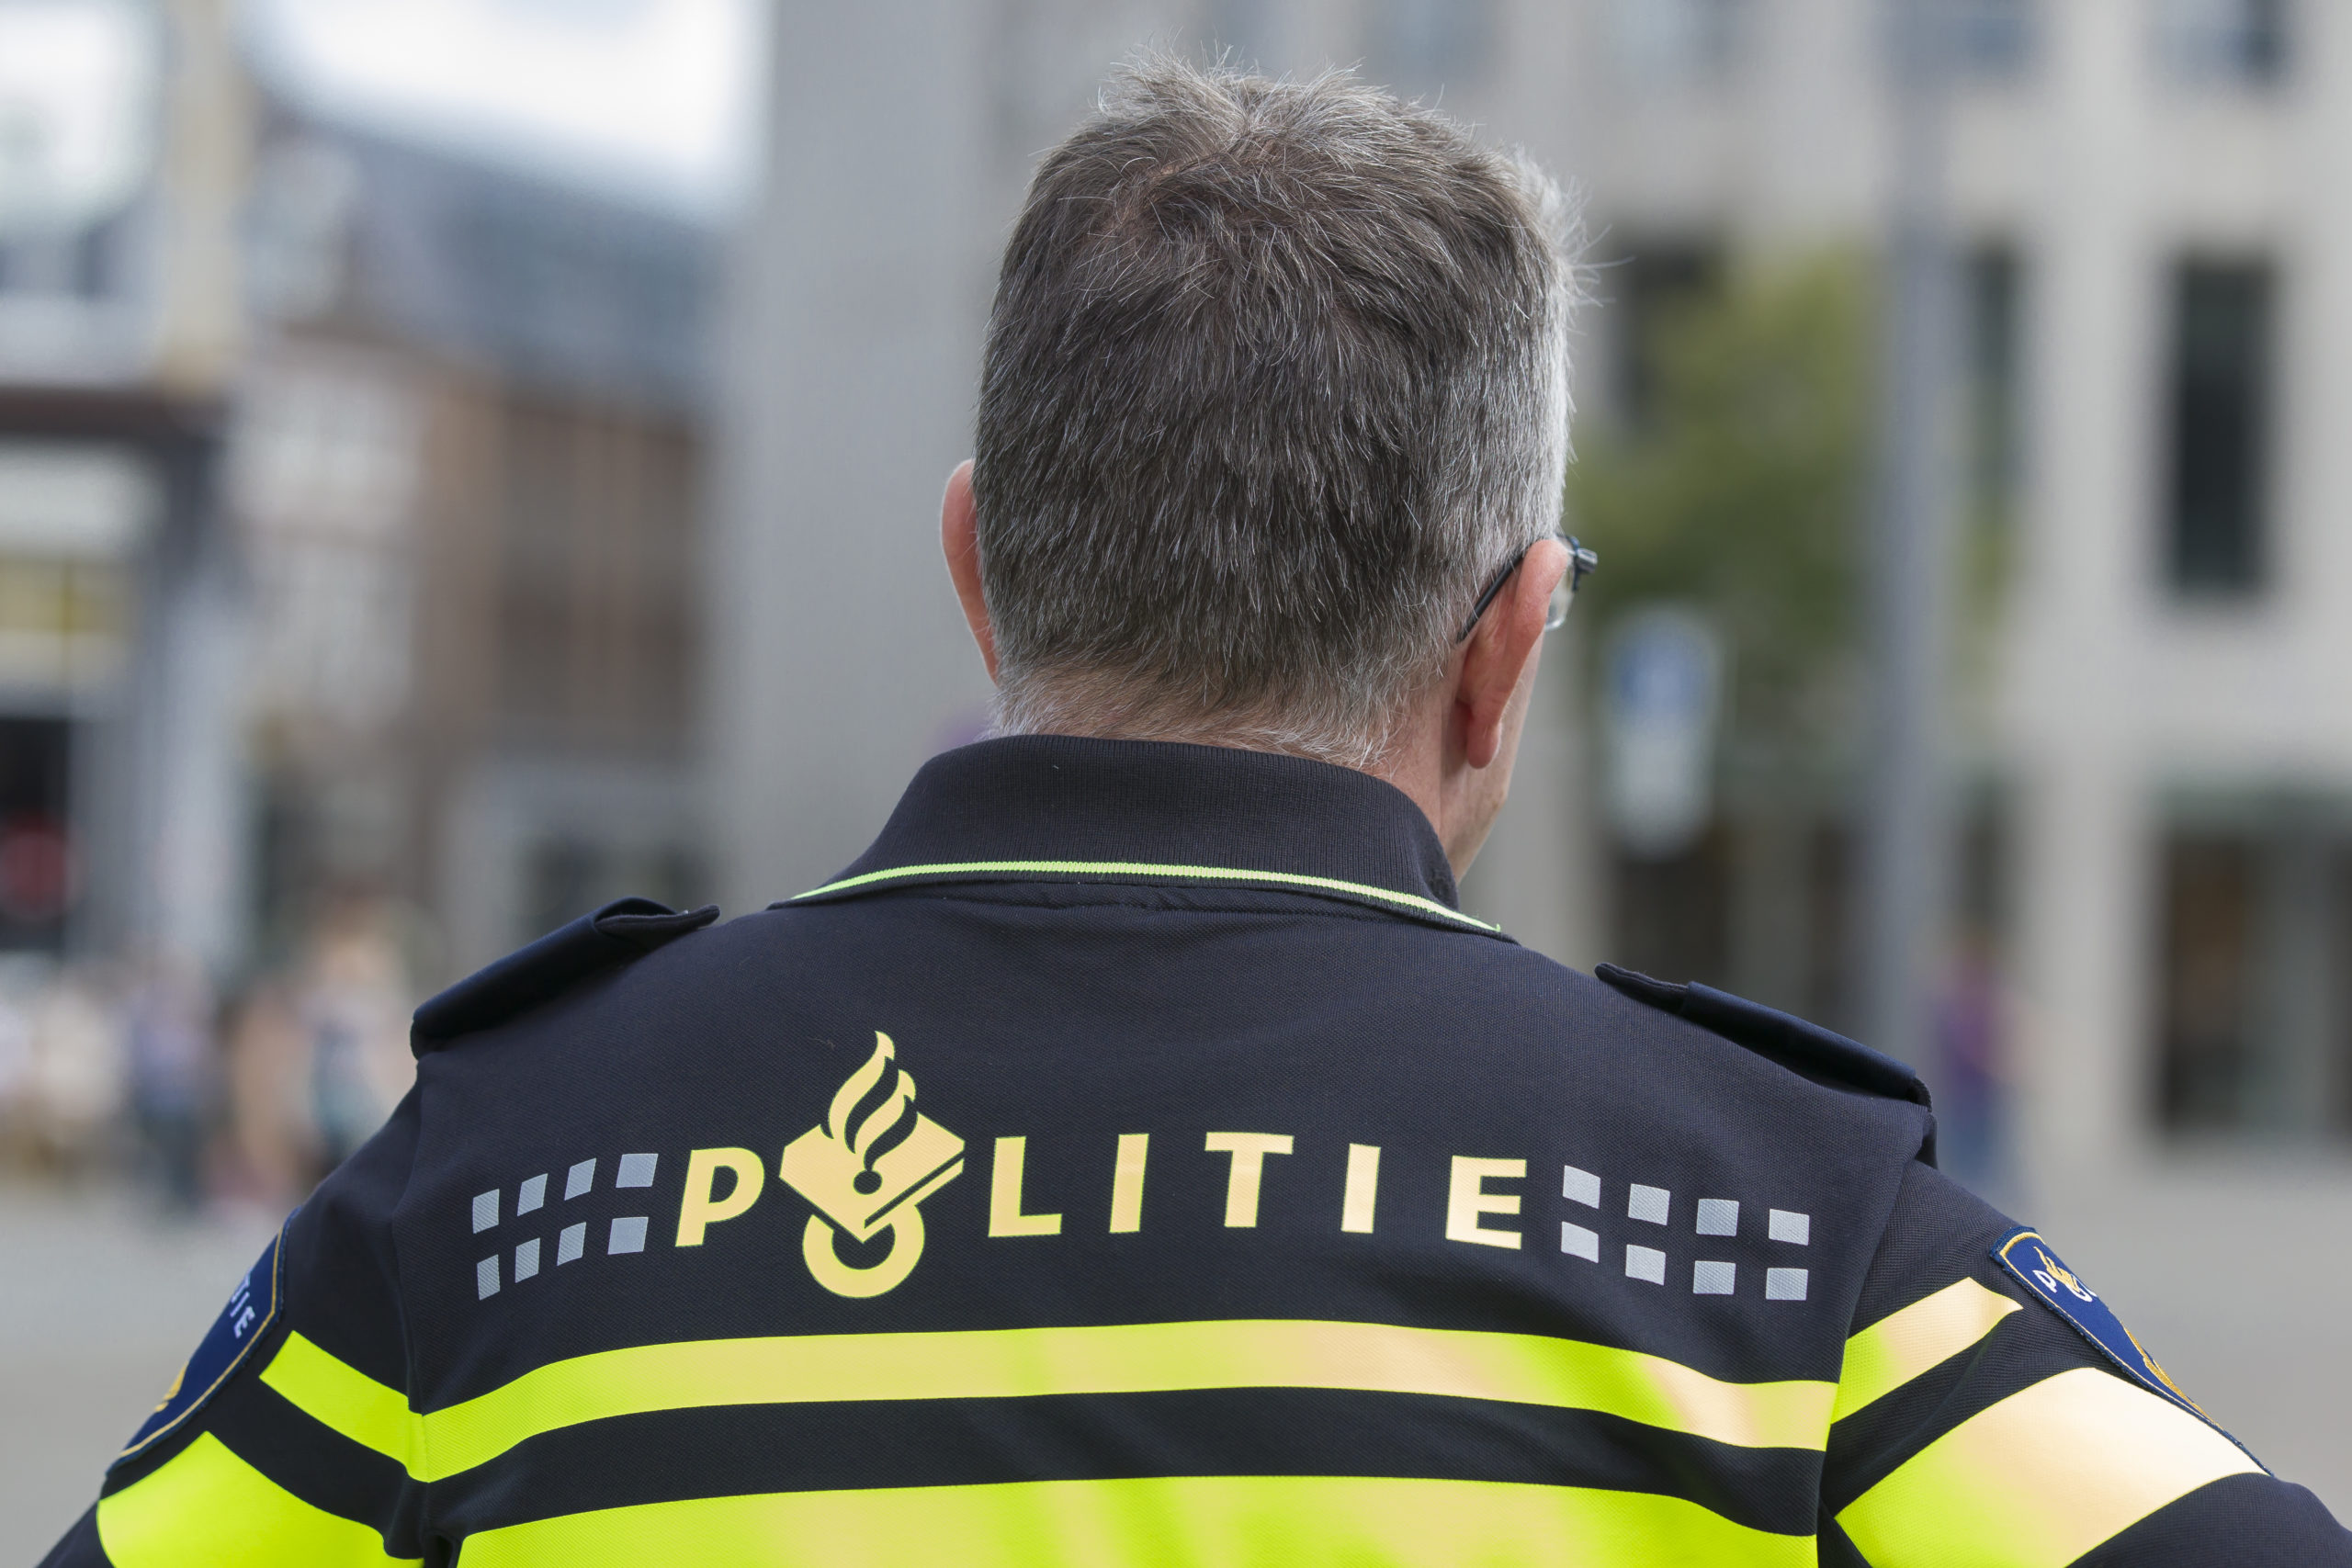 Ouderenbeleid politie: aangepast takenpakket voor oudere collega’s en andere voorzieningen